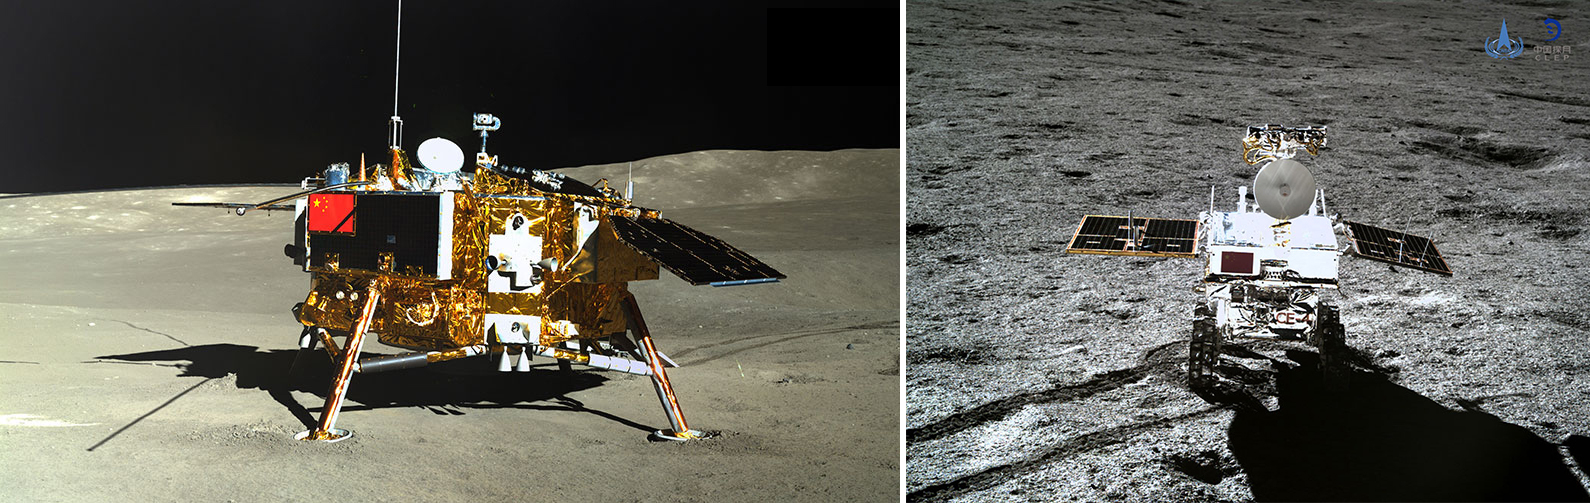 The Chang'e-4 lunar lander (L) captured by Yutu-2's panoramic camera and the Yutu-2 lunar rover (R) captured by a landscape camera installed on Chang'e-4, January 11, 2019. /CNSA